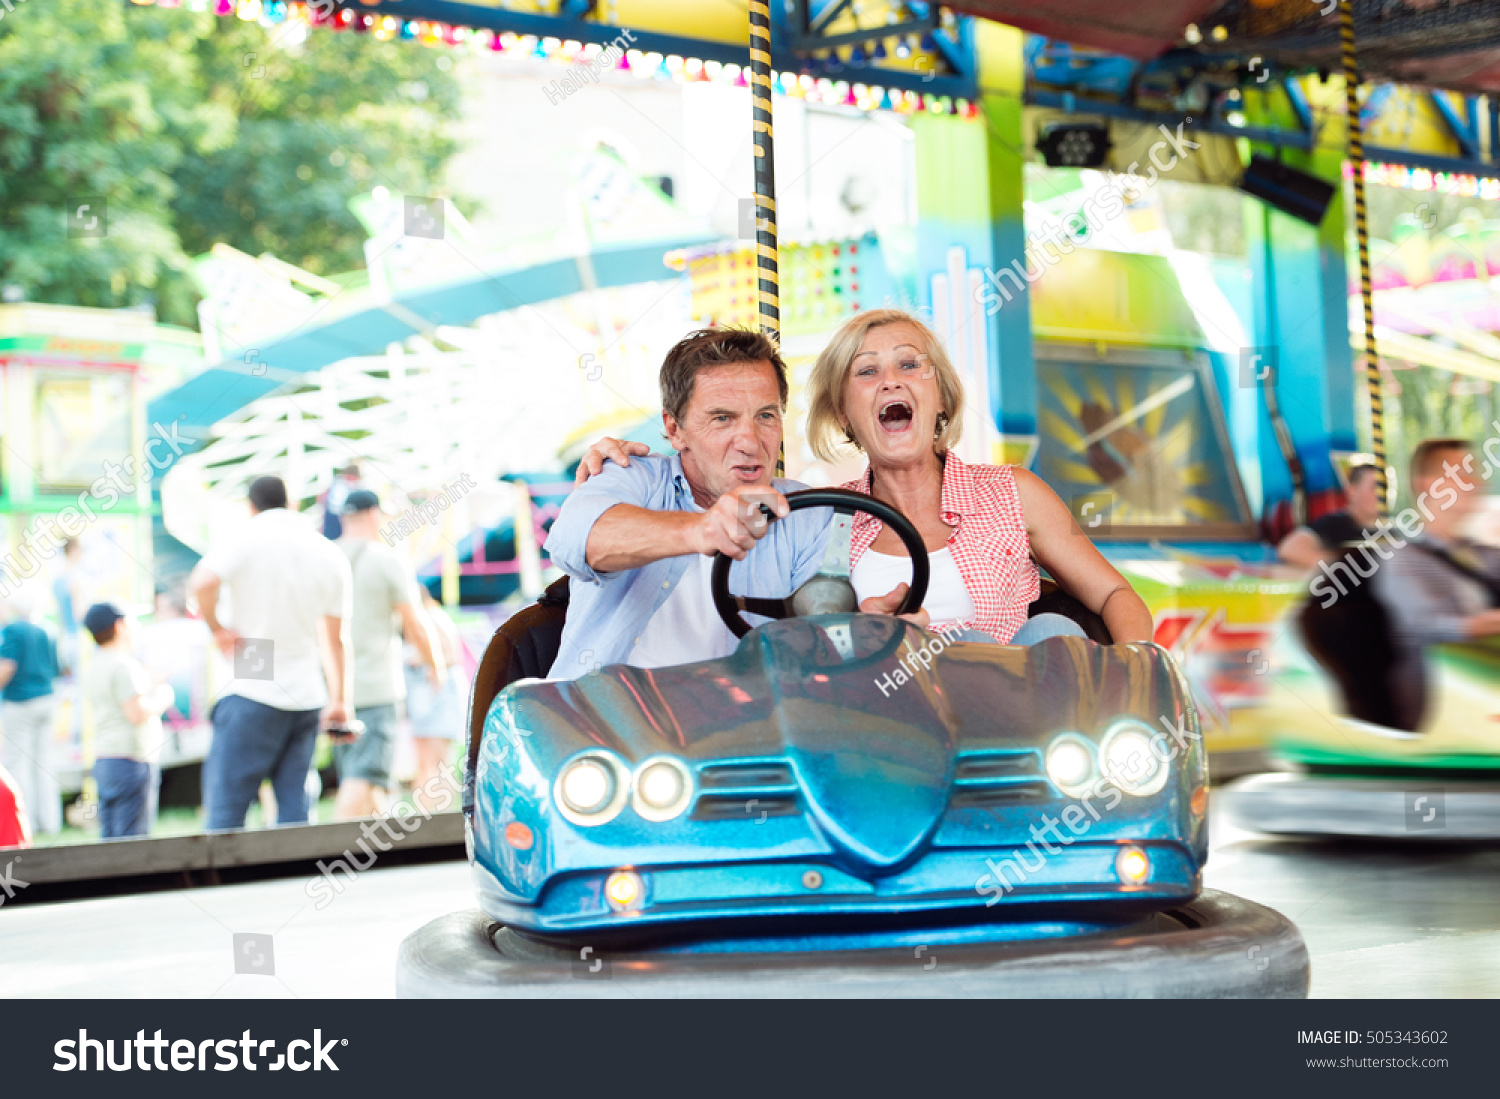 Senior couple in the bumper car at the fun fair #505343602